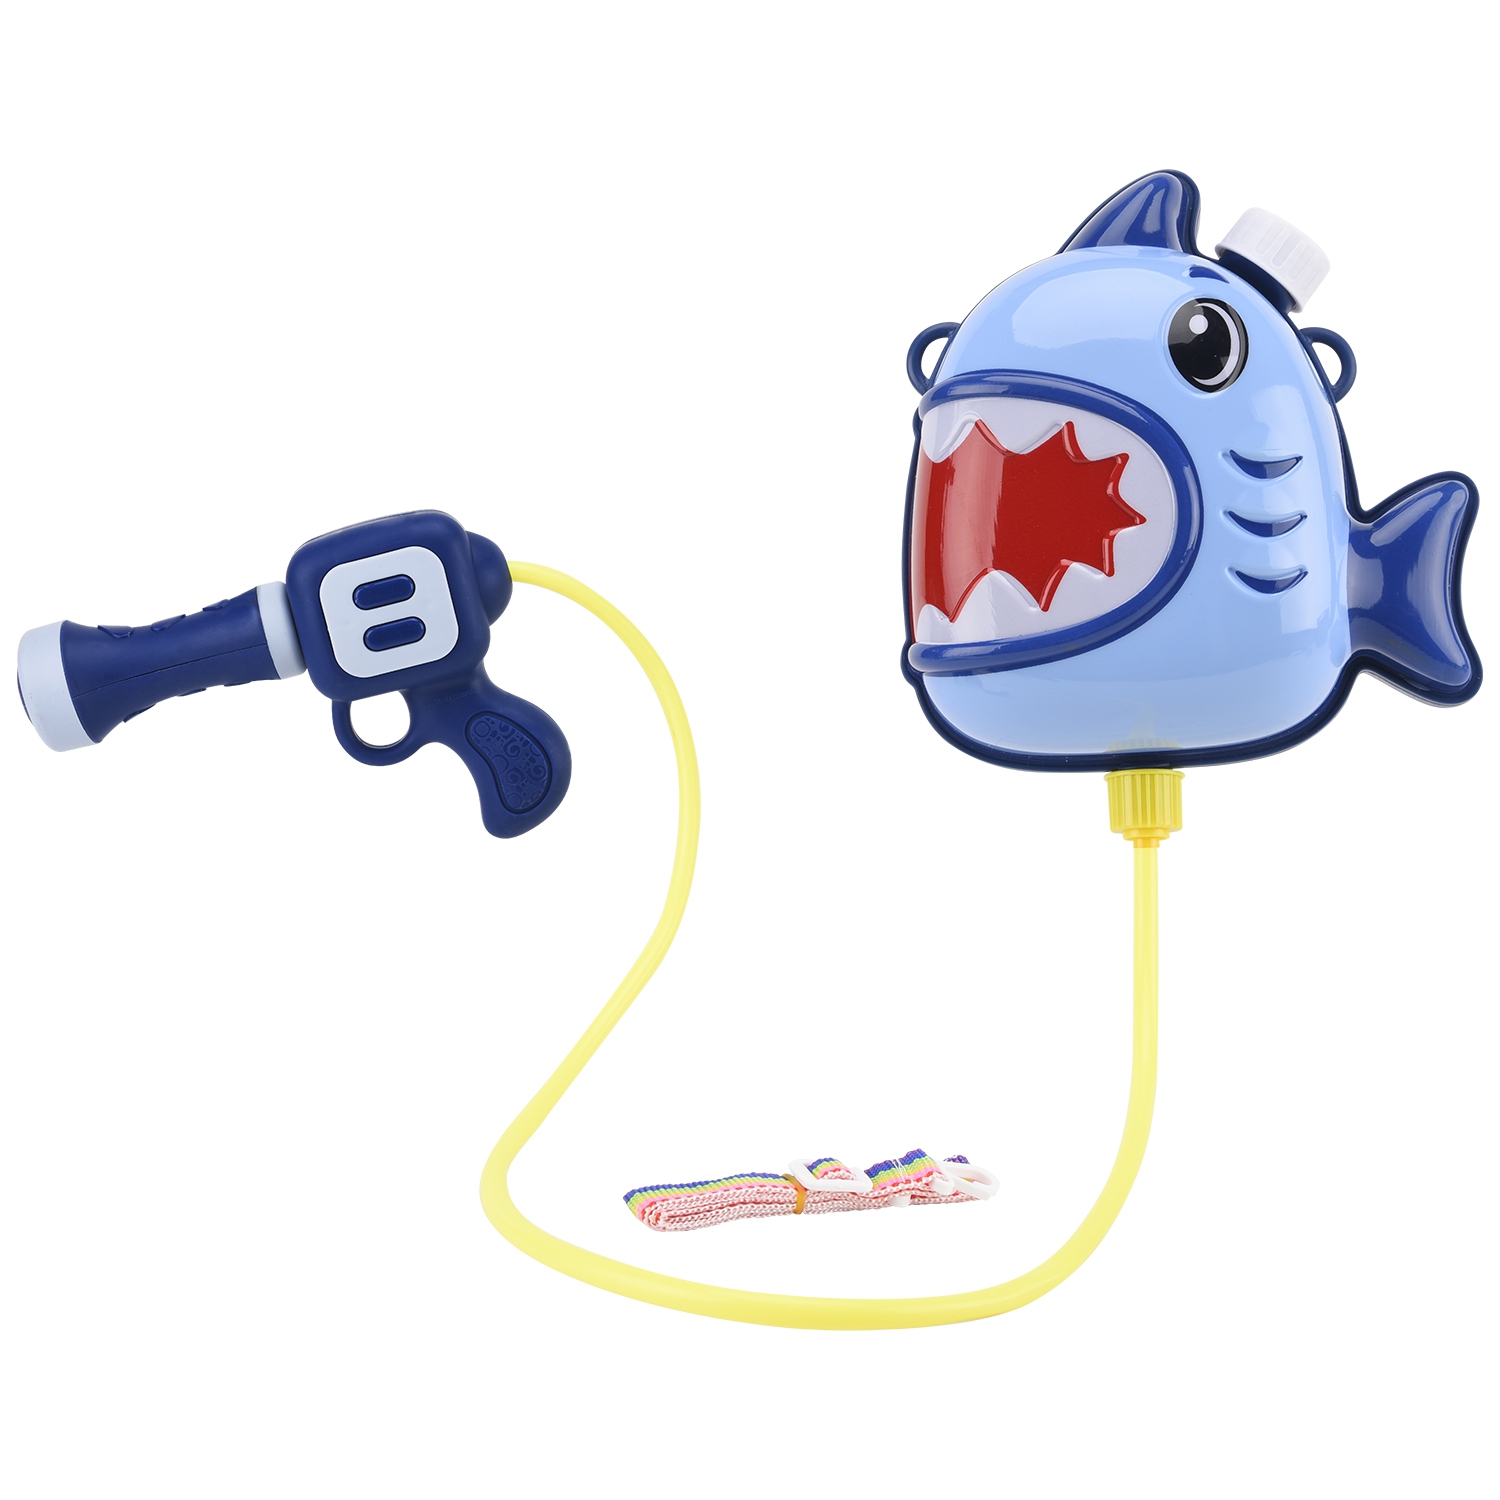 Водный пистолет Bebelot Бластер-акула, Водный пистолет, ранец, ремешок, синий (BEB1106-133)